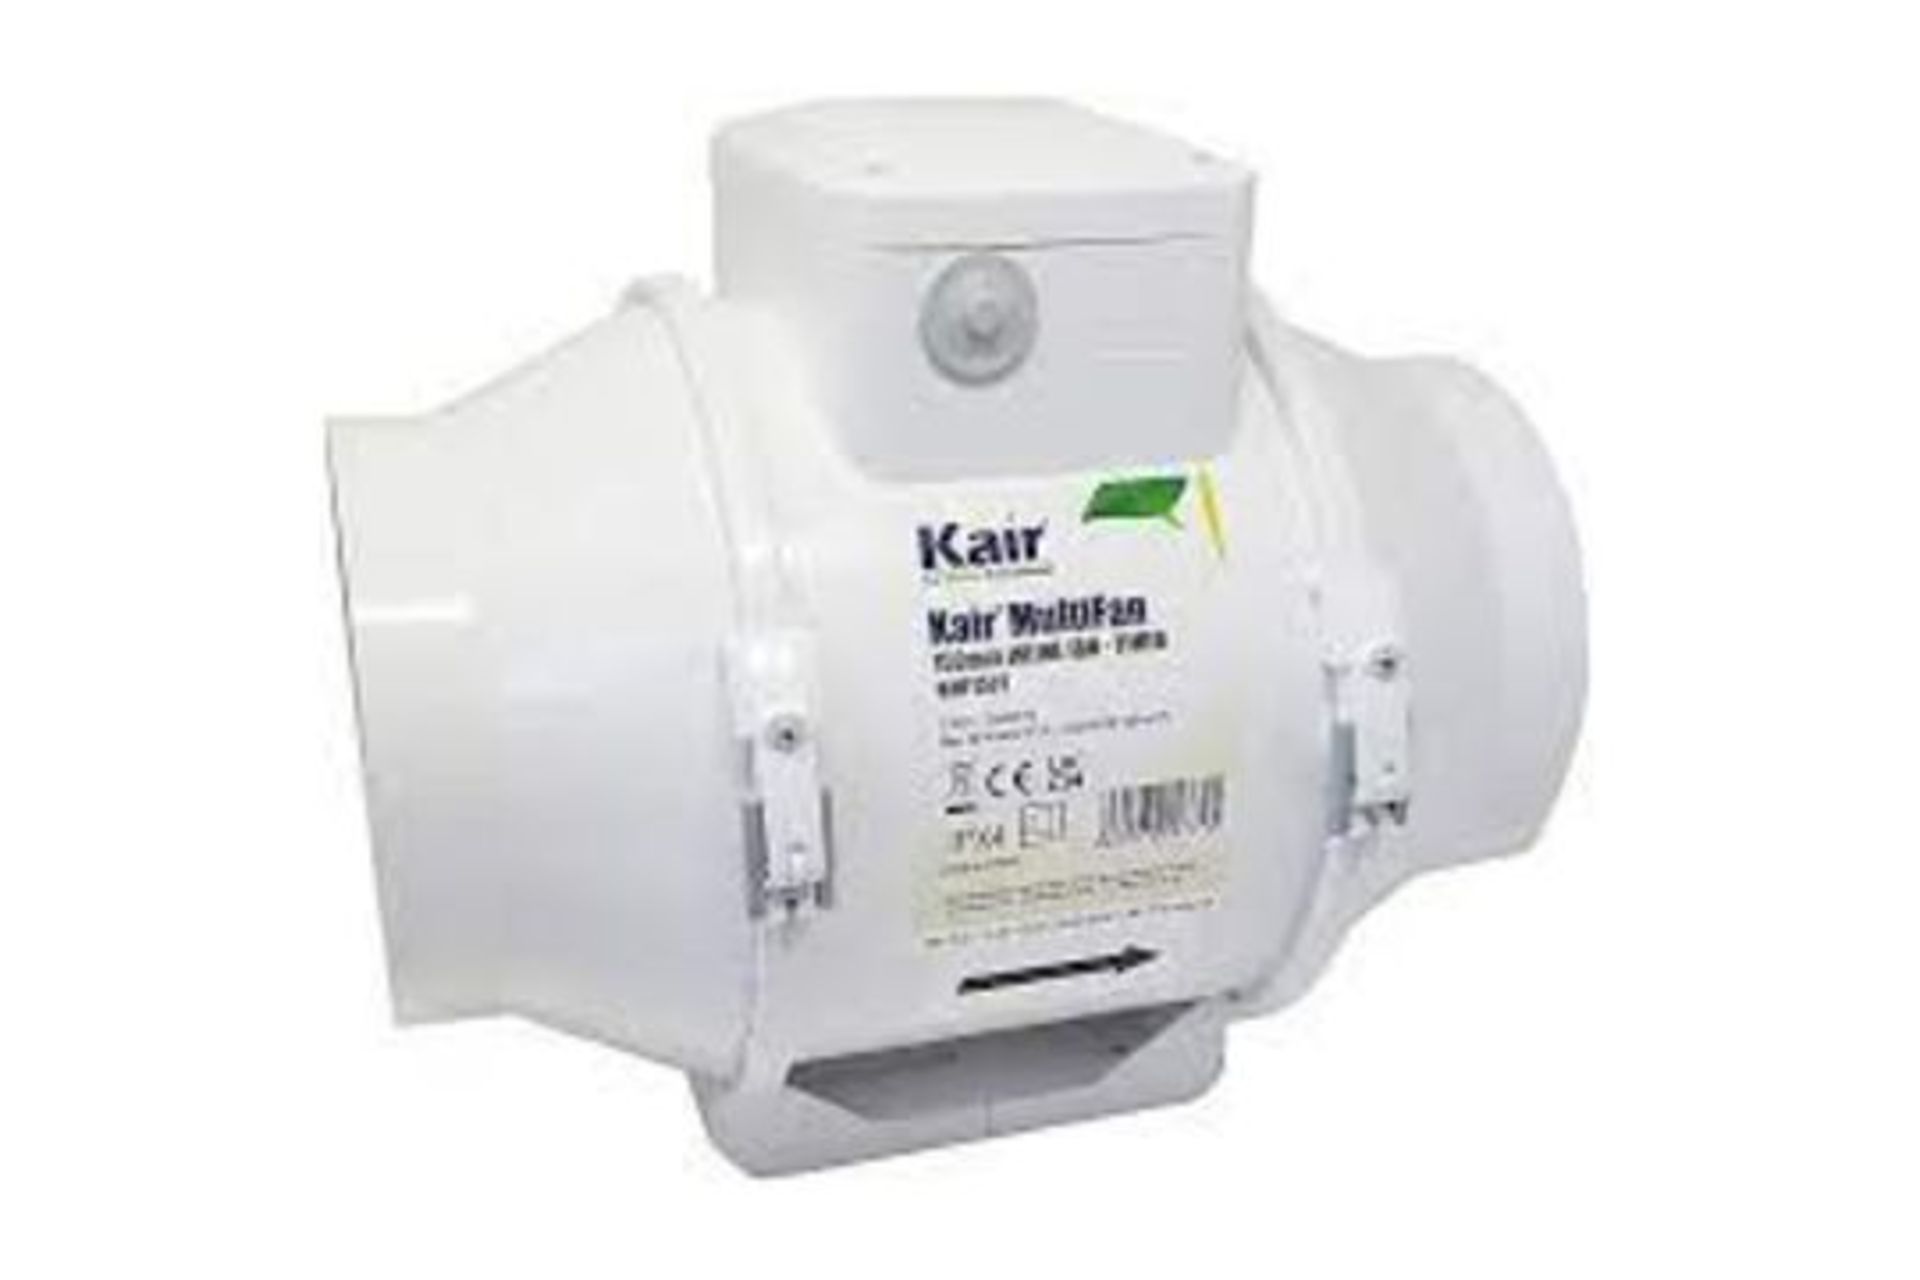 Kair MultiFan 150mm In Line Fan with Timer - R14.9.